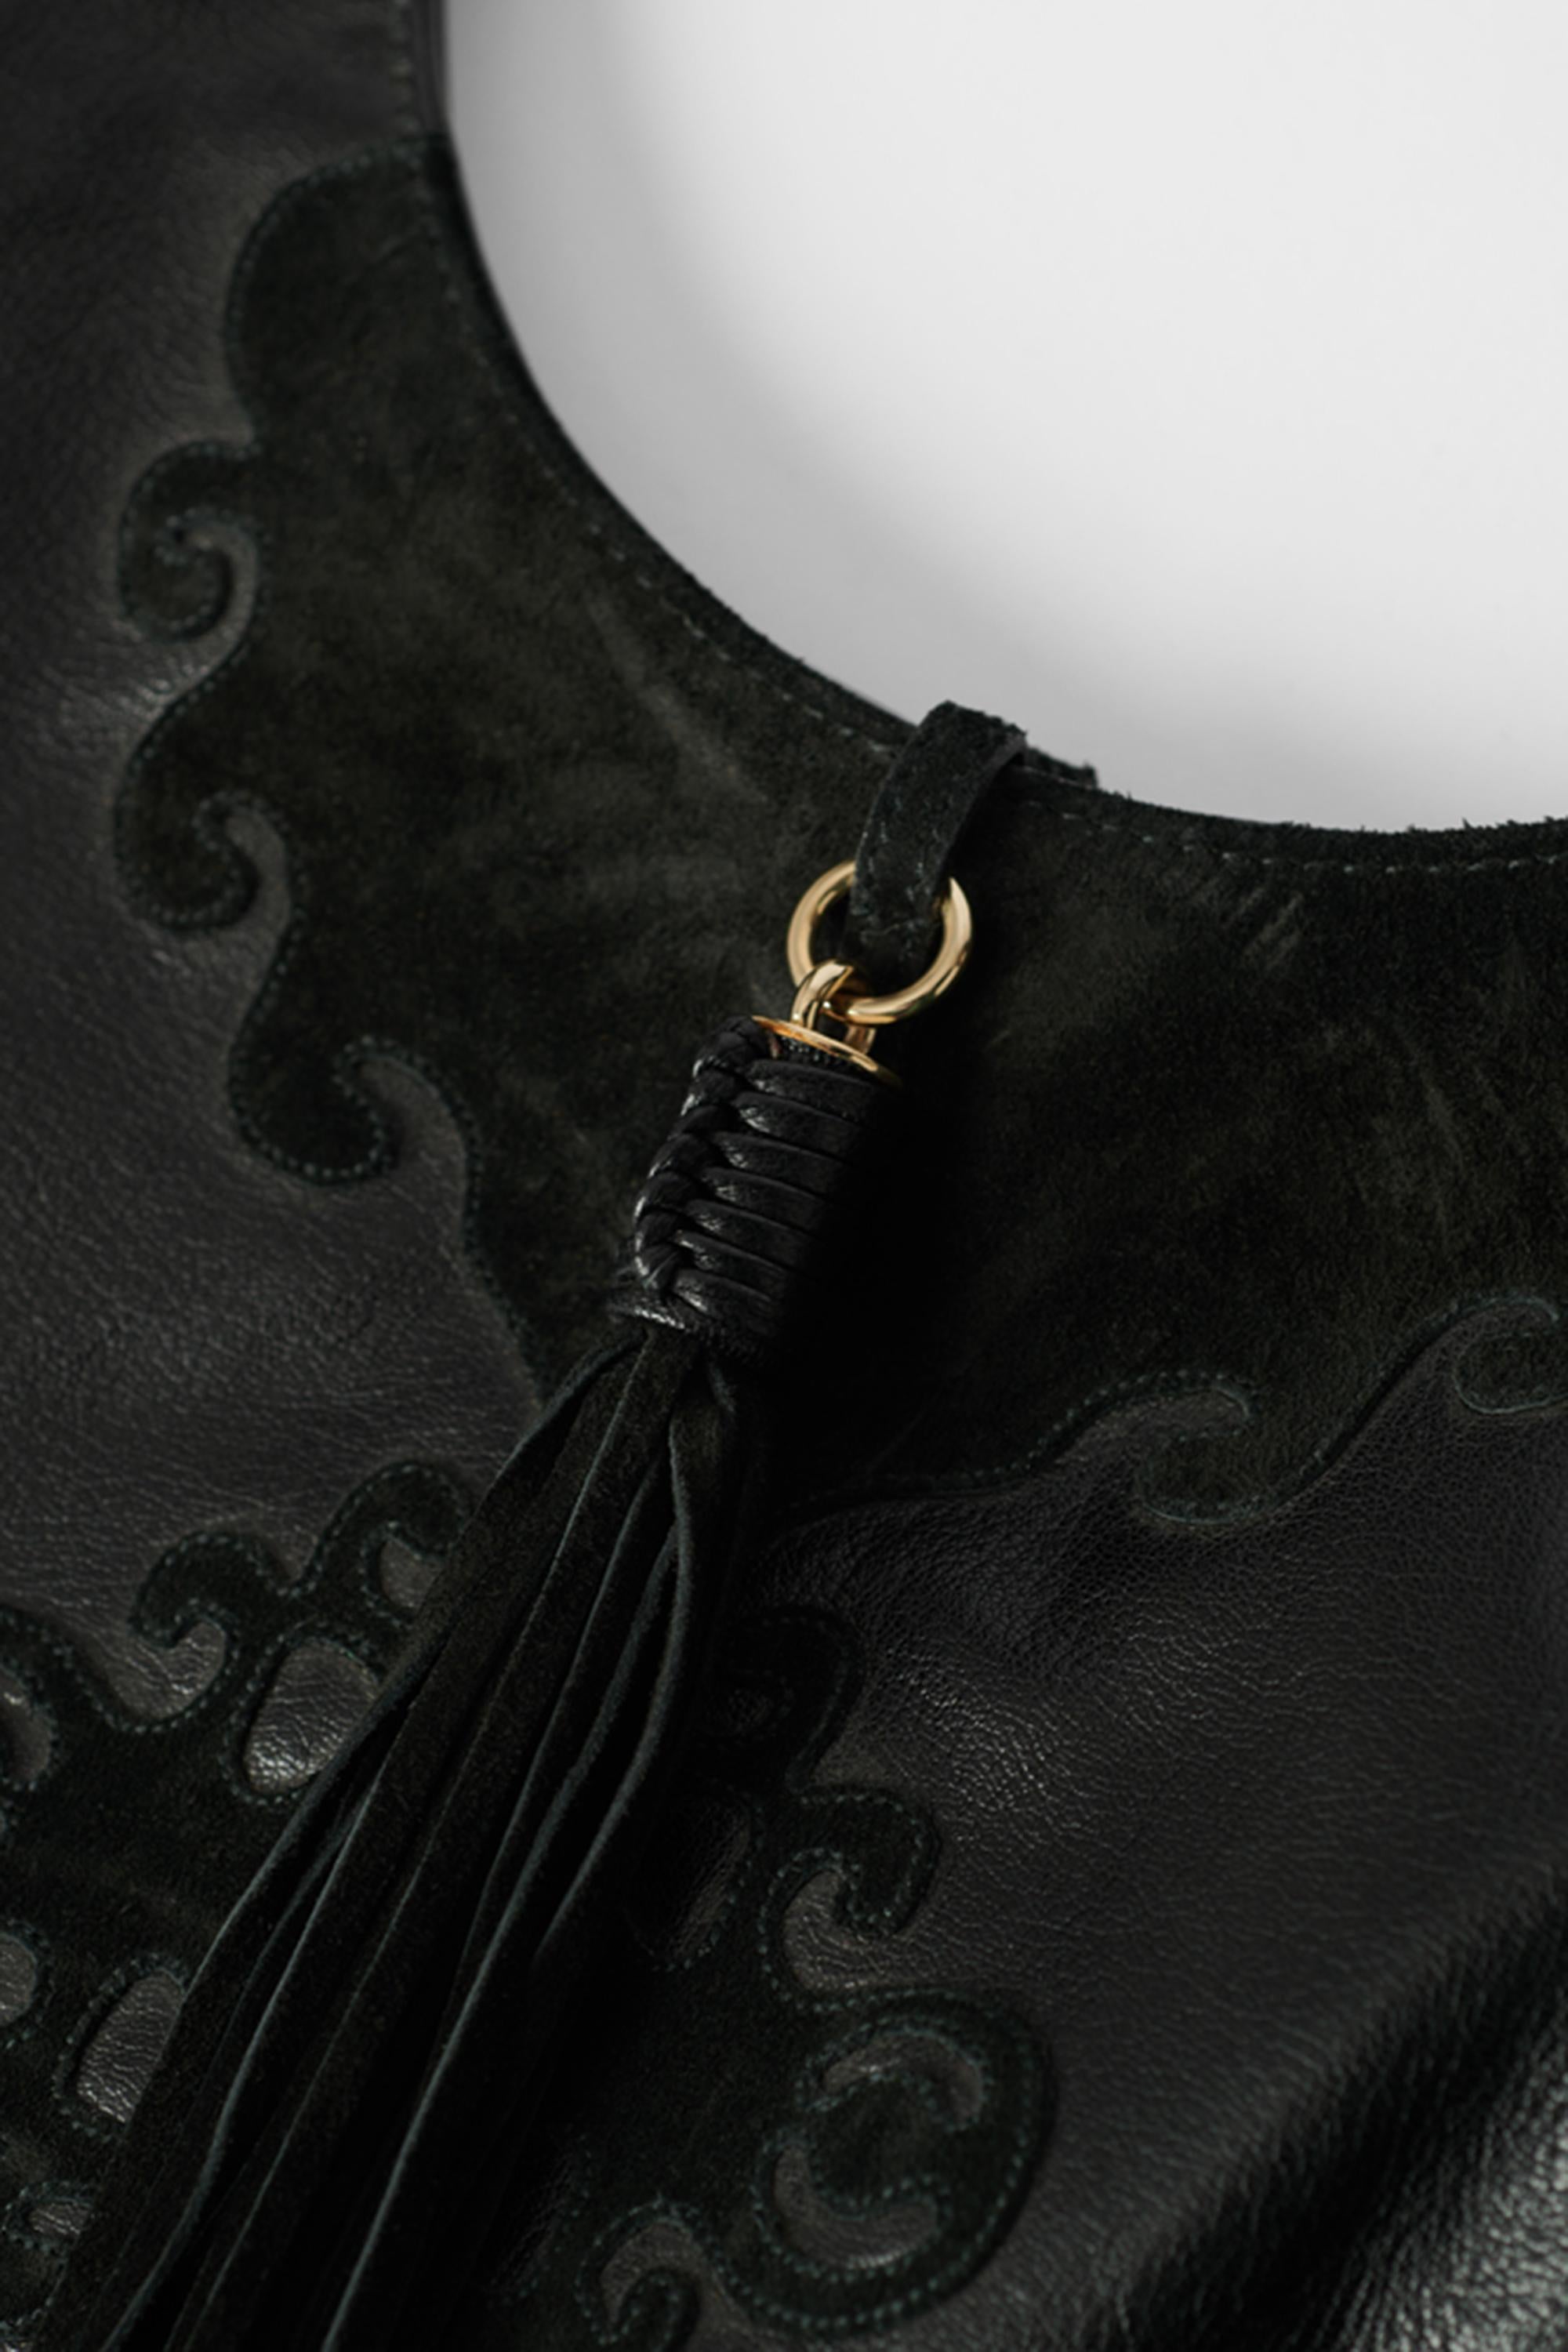 Women's Yves Saint Laurent  Black Leather Hobo Bag with Tassel